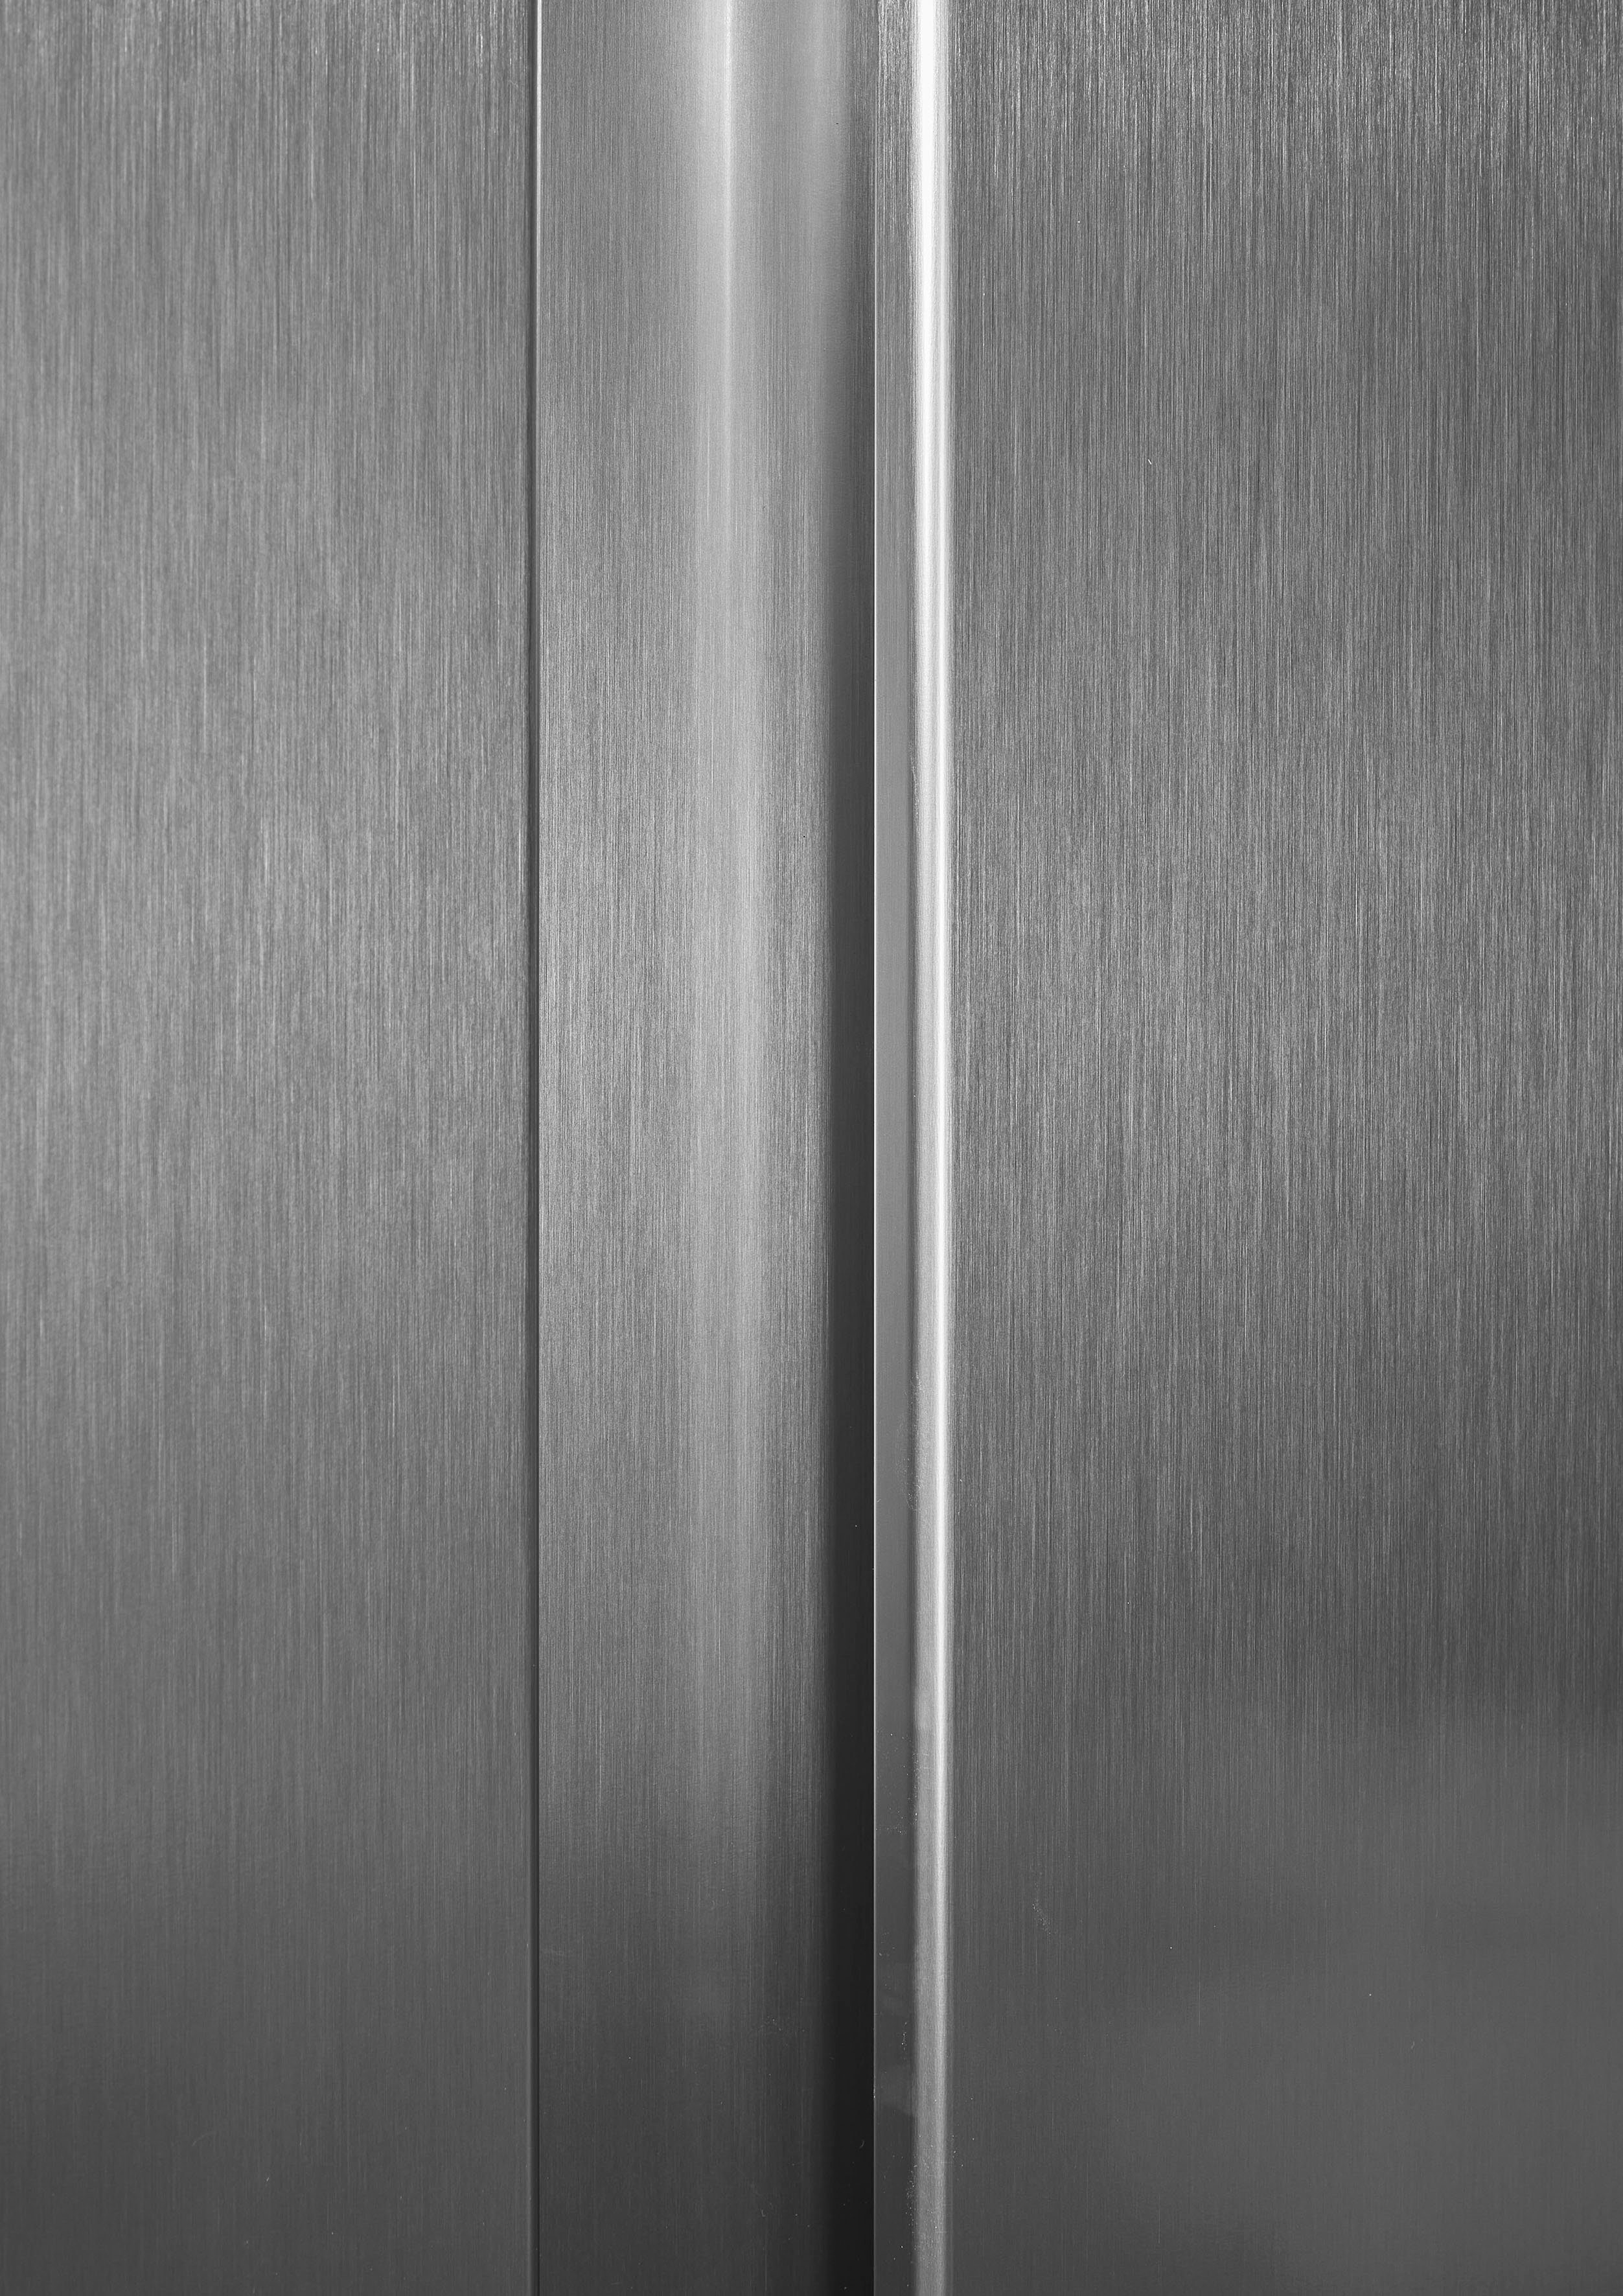 grau Side-by-Side hoch, 178,6 cm RS677N4ACC, 91 Hisense cm breit